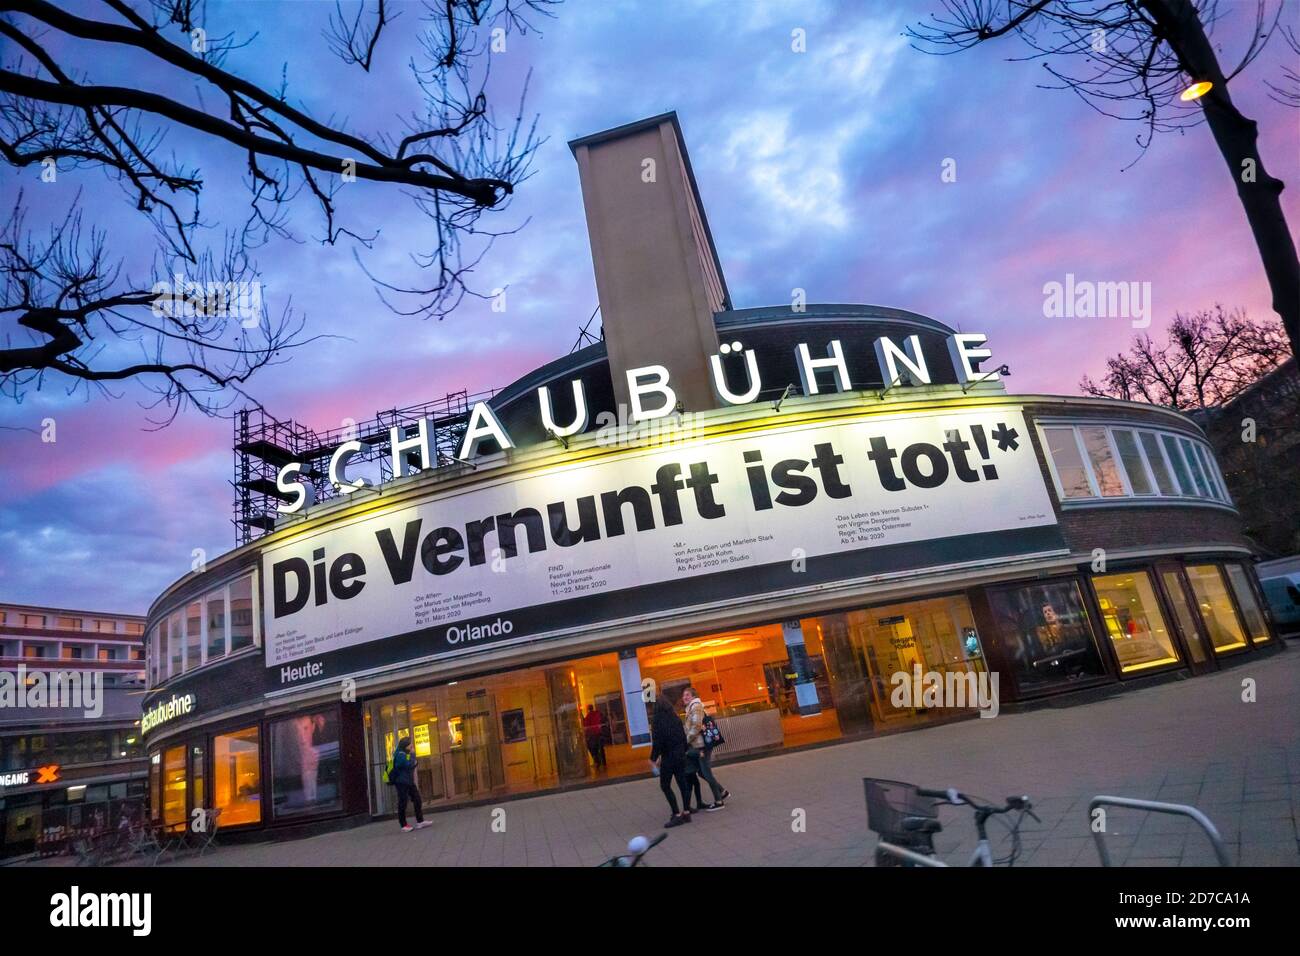 Schaubühne am Lehniner Platz. Célèbre théâtre Schaubuhne à Berlin avec la bannière Die Vernunft ist tot: La raison ou le bon sens est mort. Banque D'Images